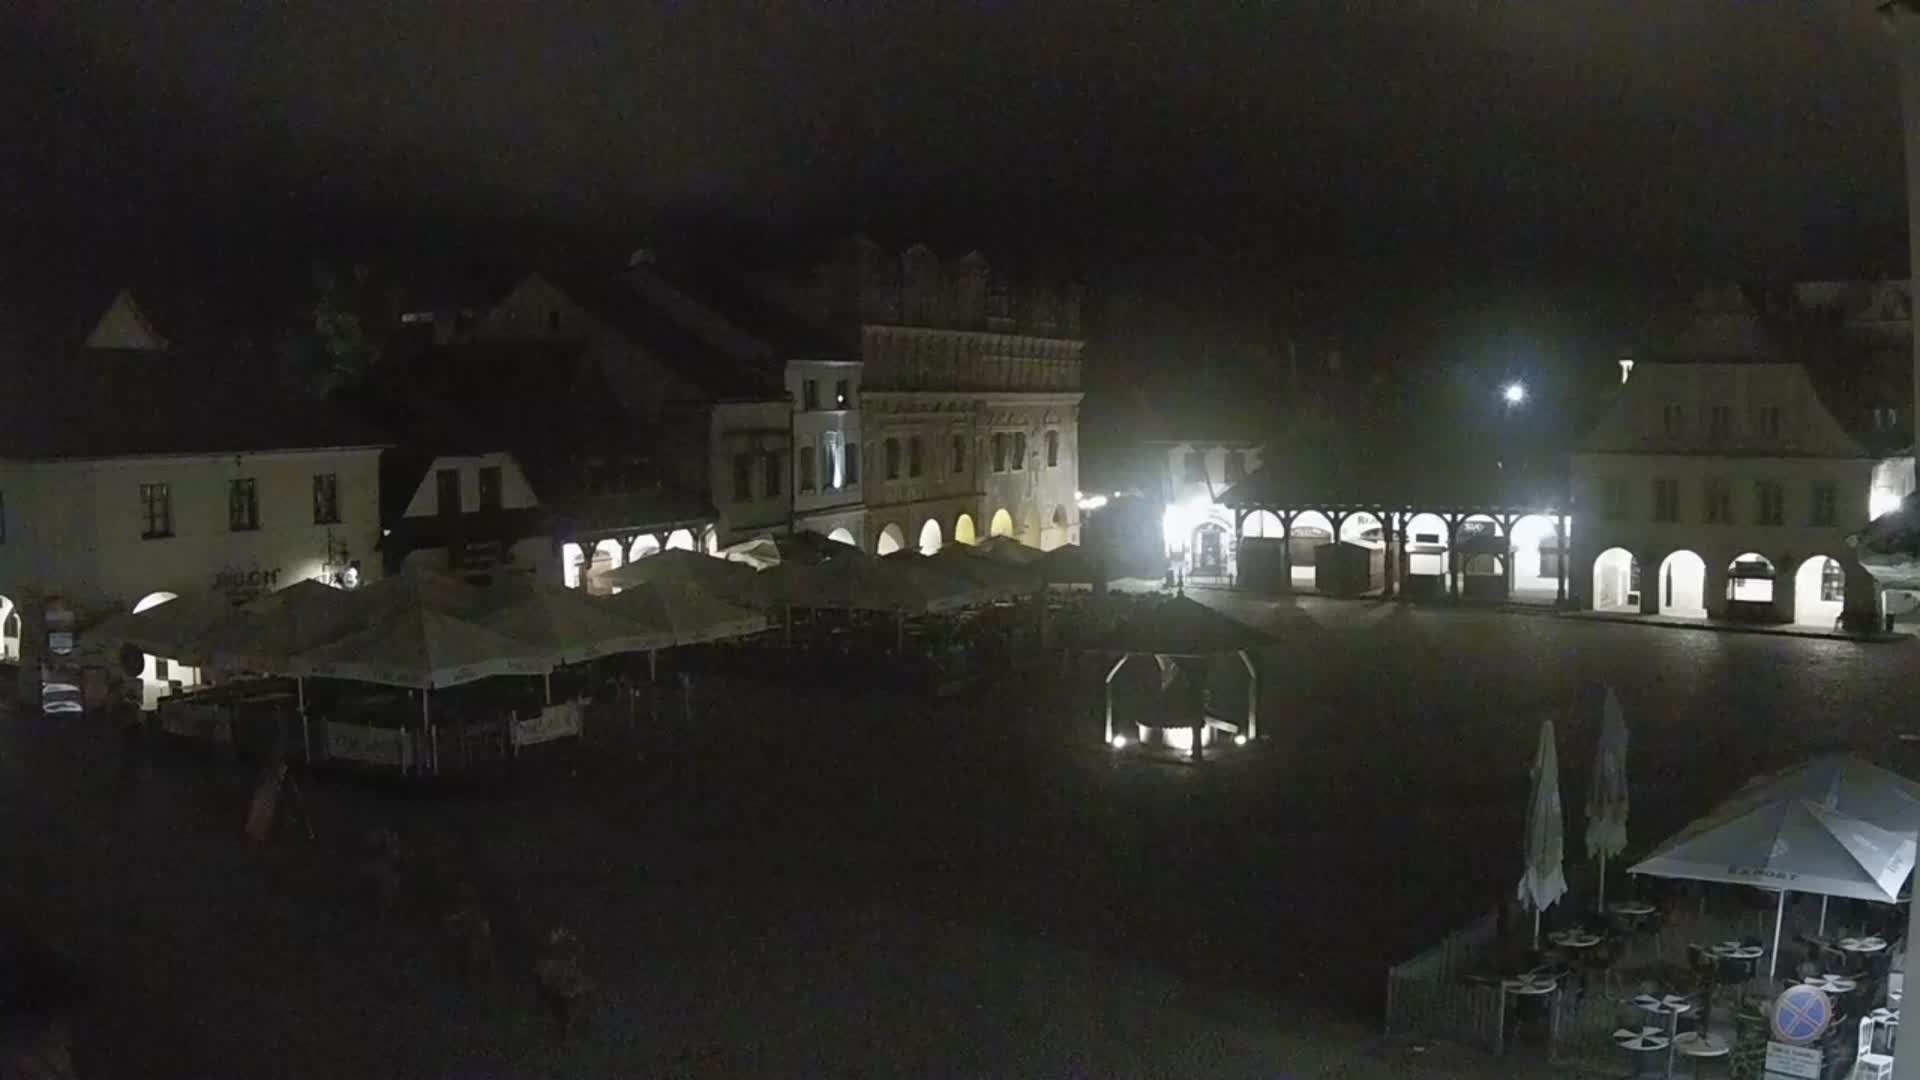 Kazimierz Dolny Tor. 02:22